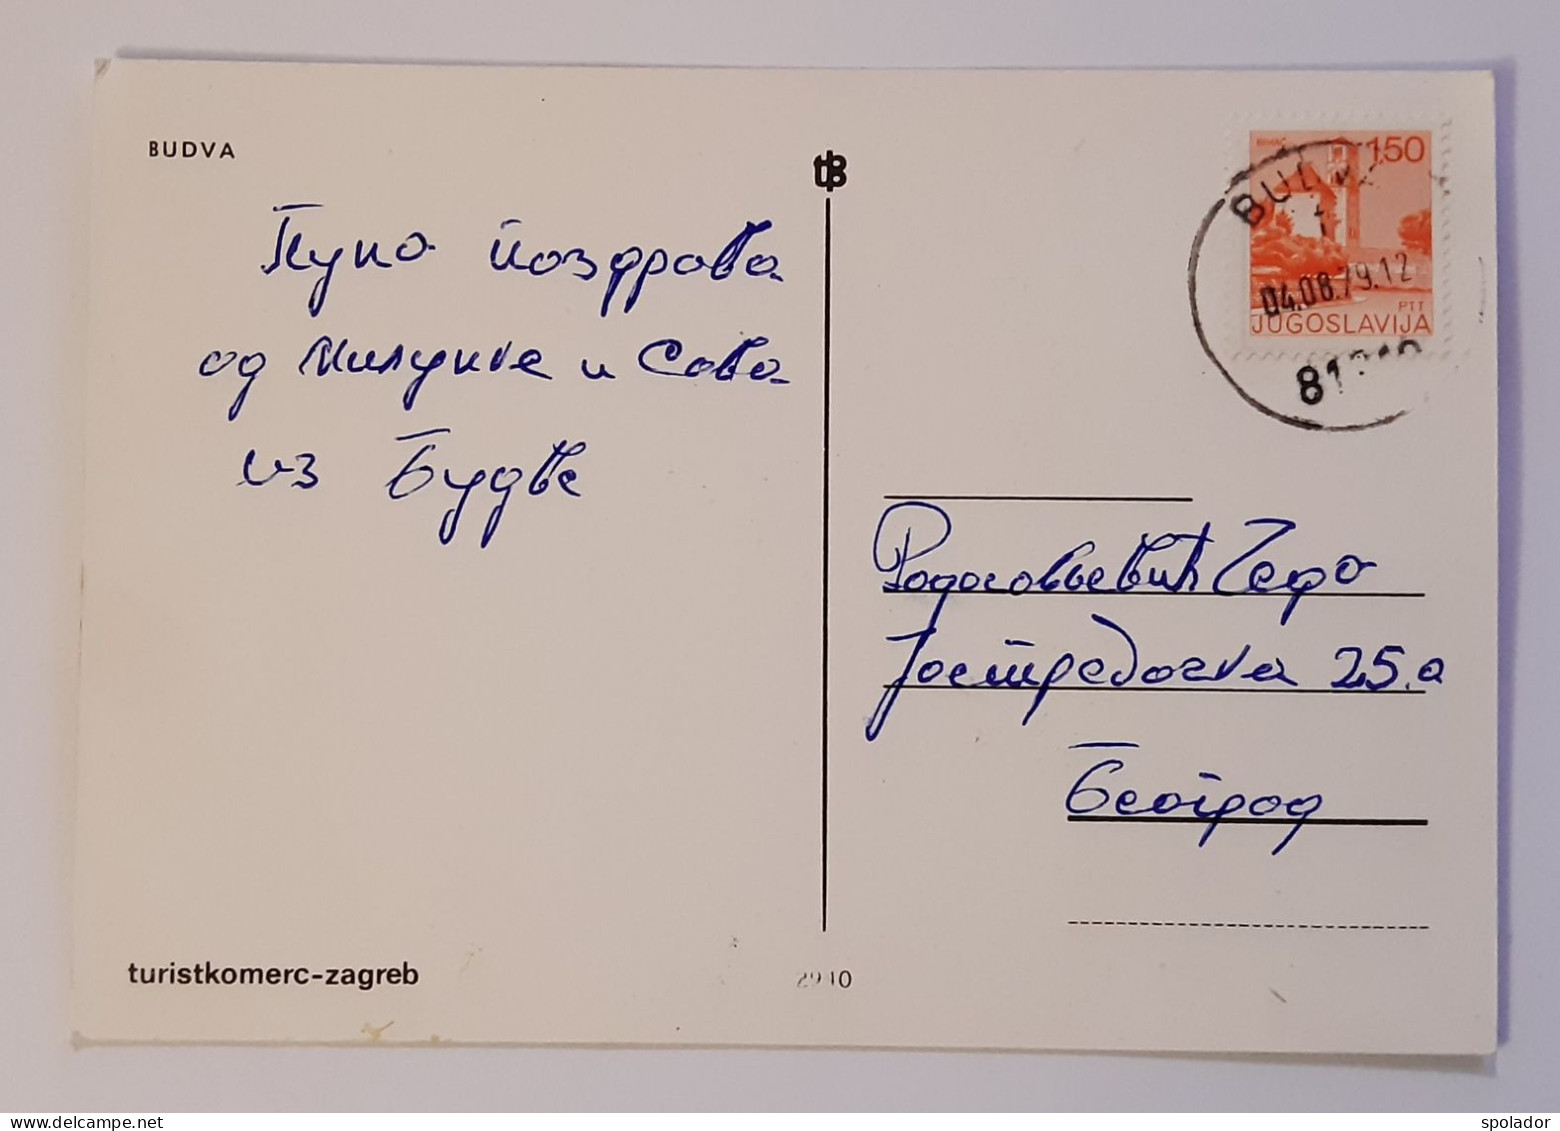 BUDVA-Ex-Yugoslavia-Vintage Panorama Postcard-Montenegro-Crna Gora-used With Stamp 1979 - Jugoslavia